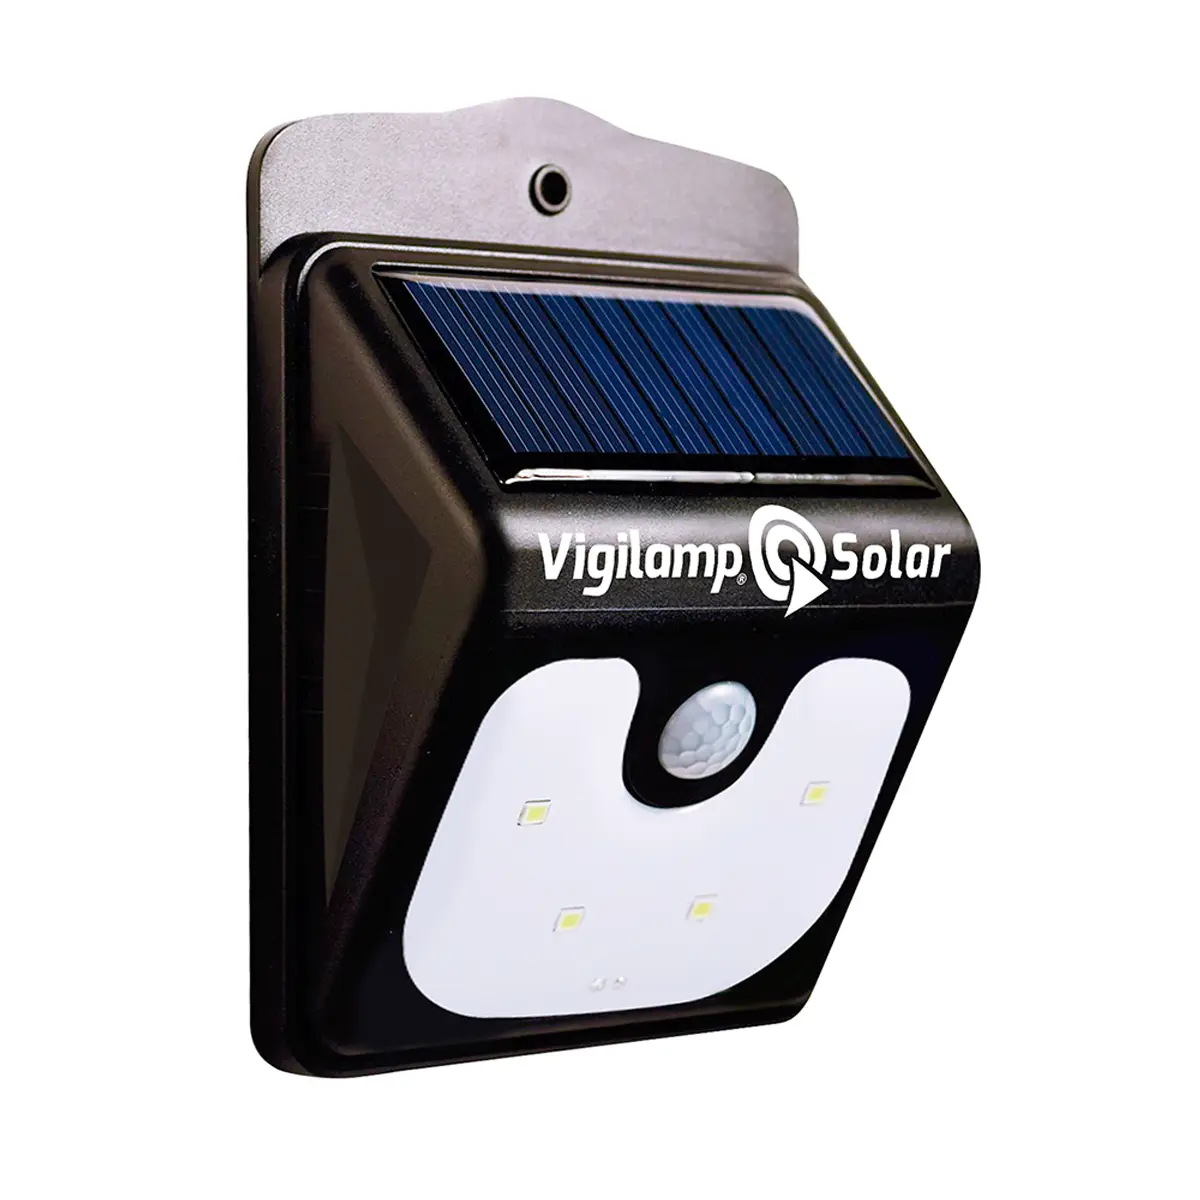 Bewegungssensor Solar mit Vigilamp庐 -